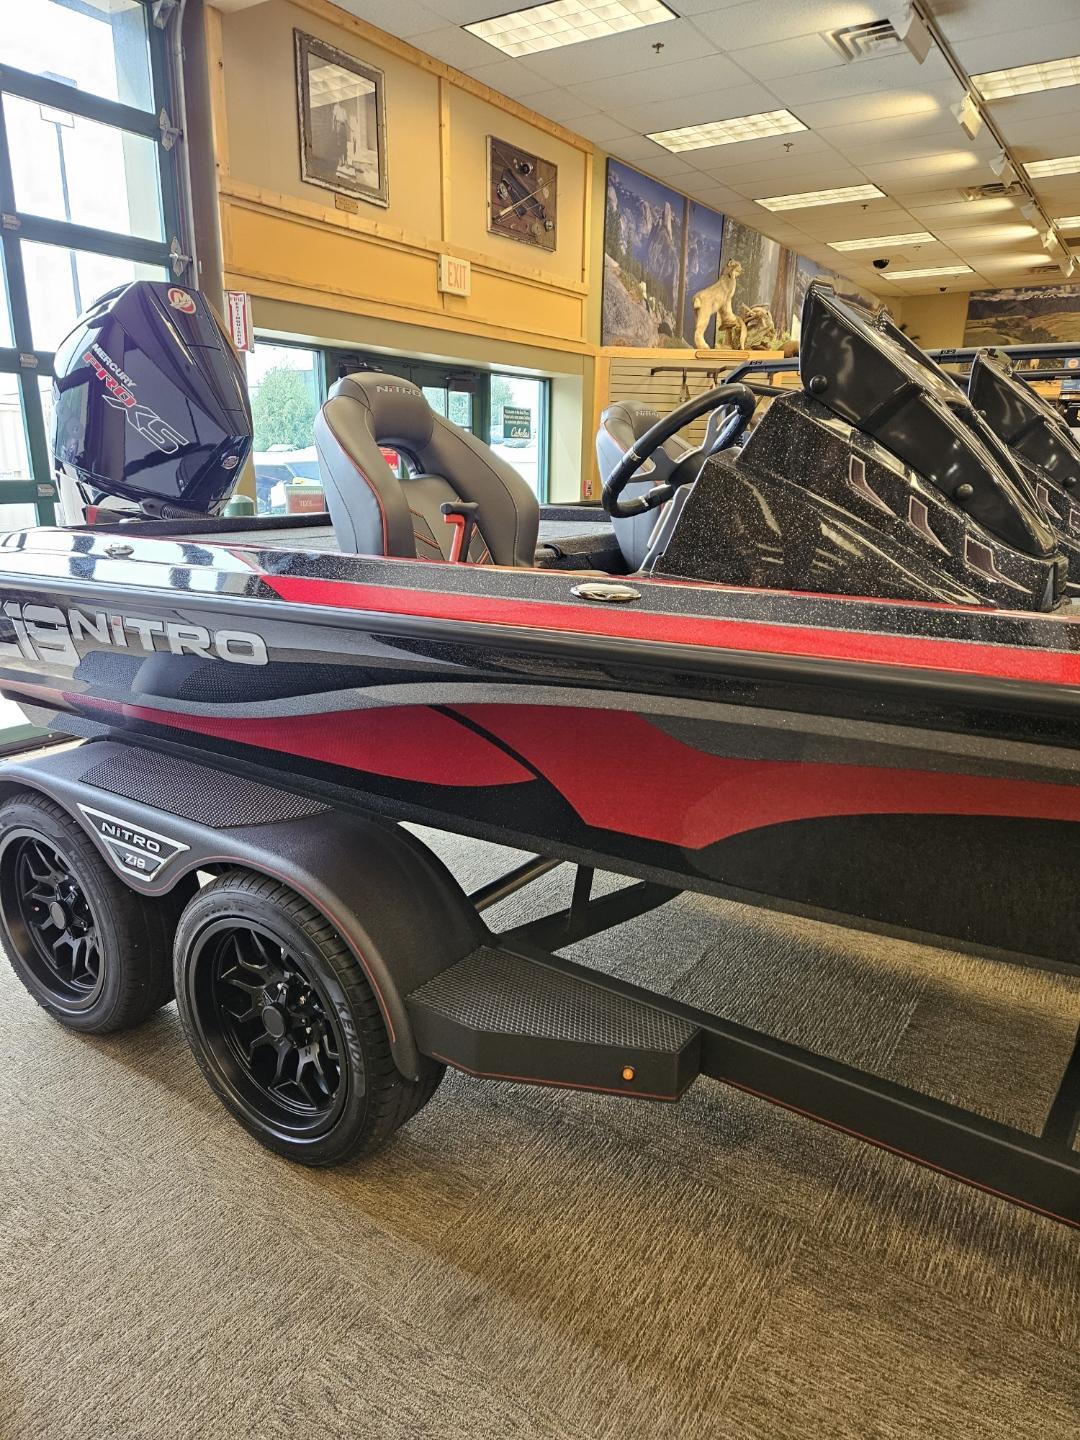 Nitro Z19 boats for sale in Wisconsin - Boat Trader